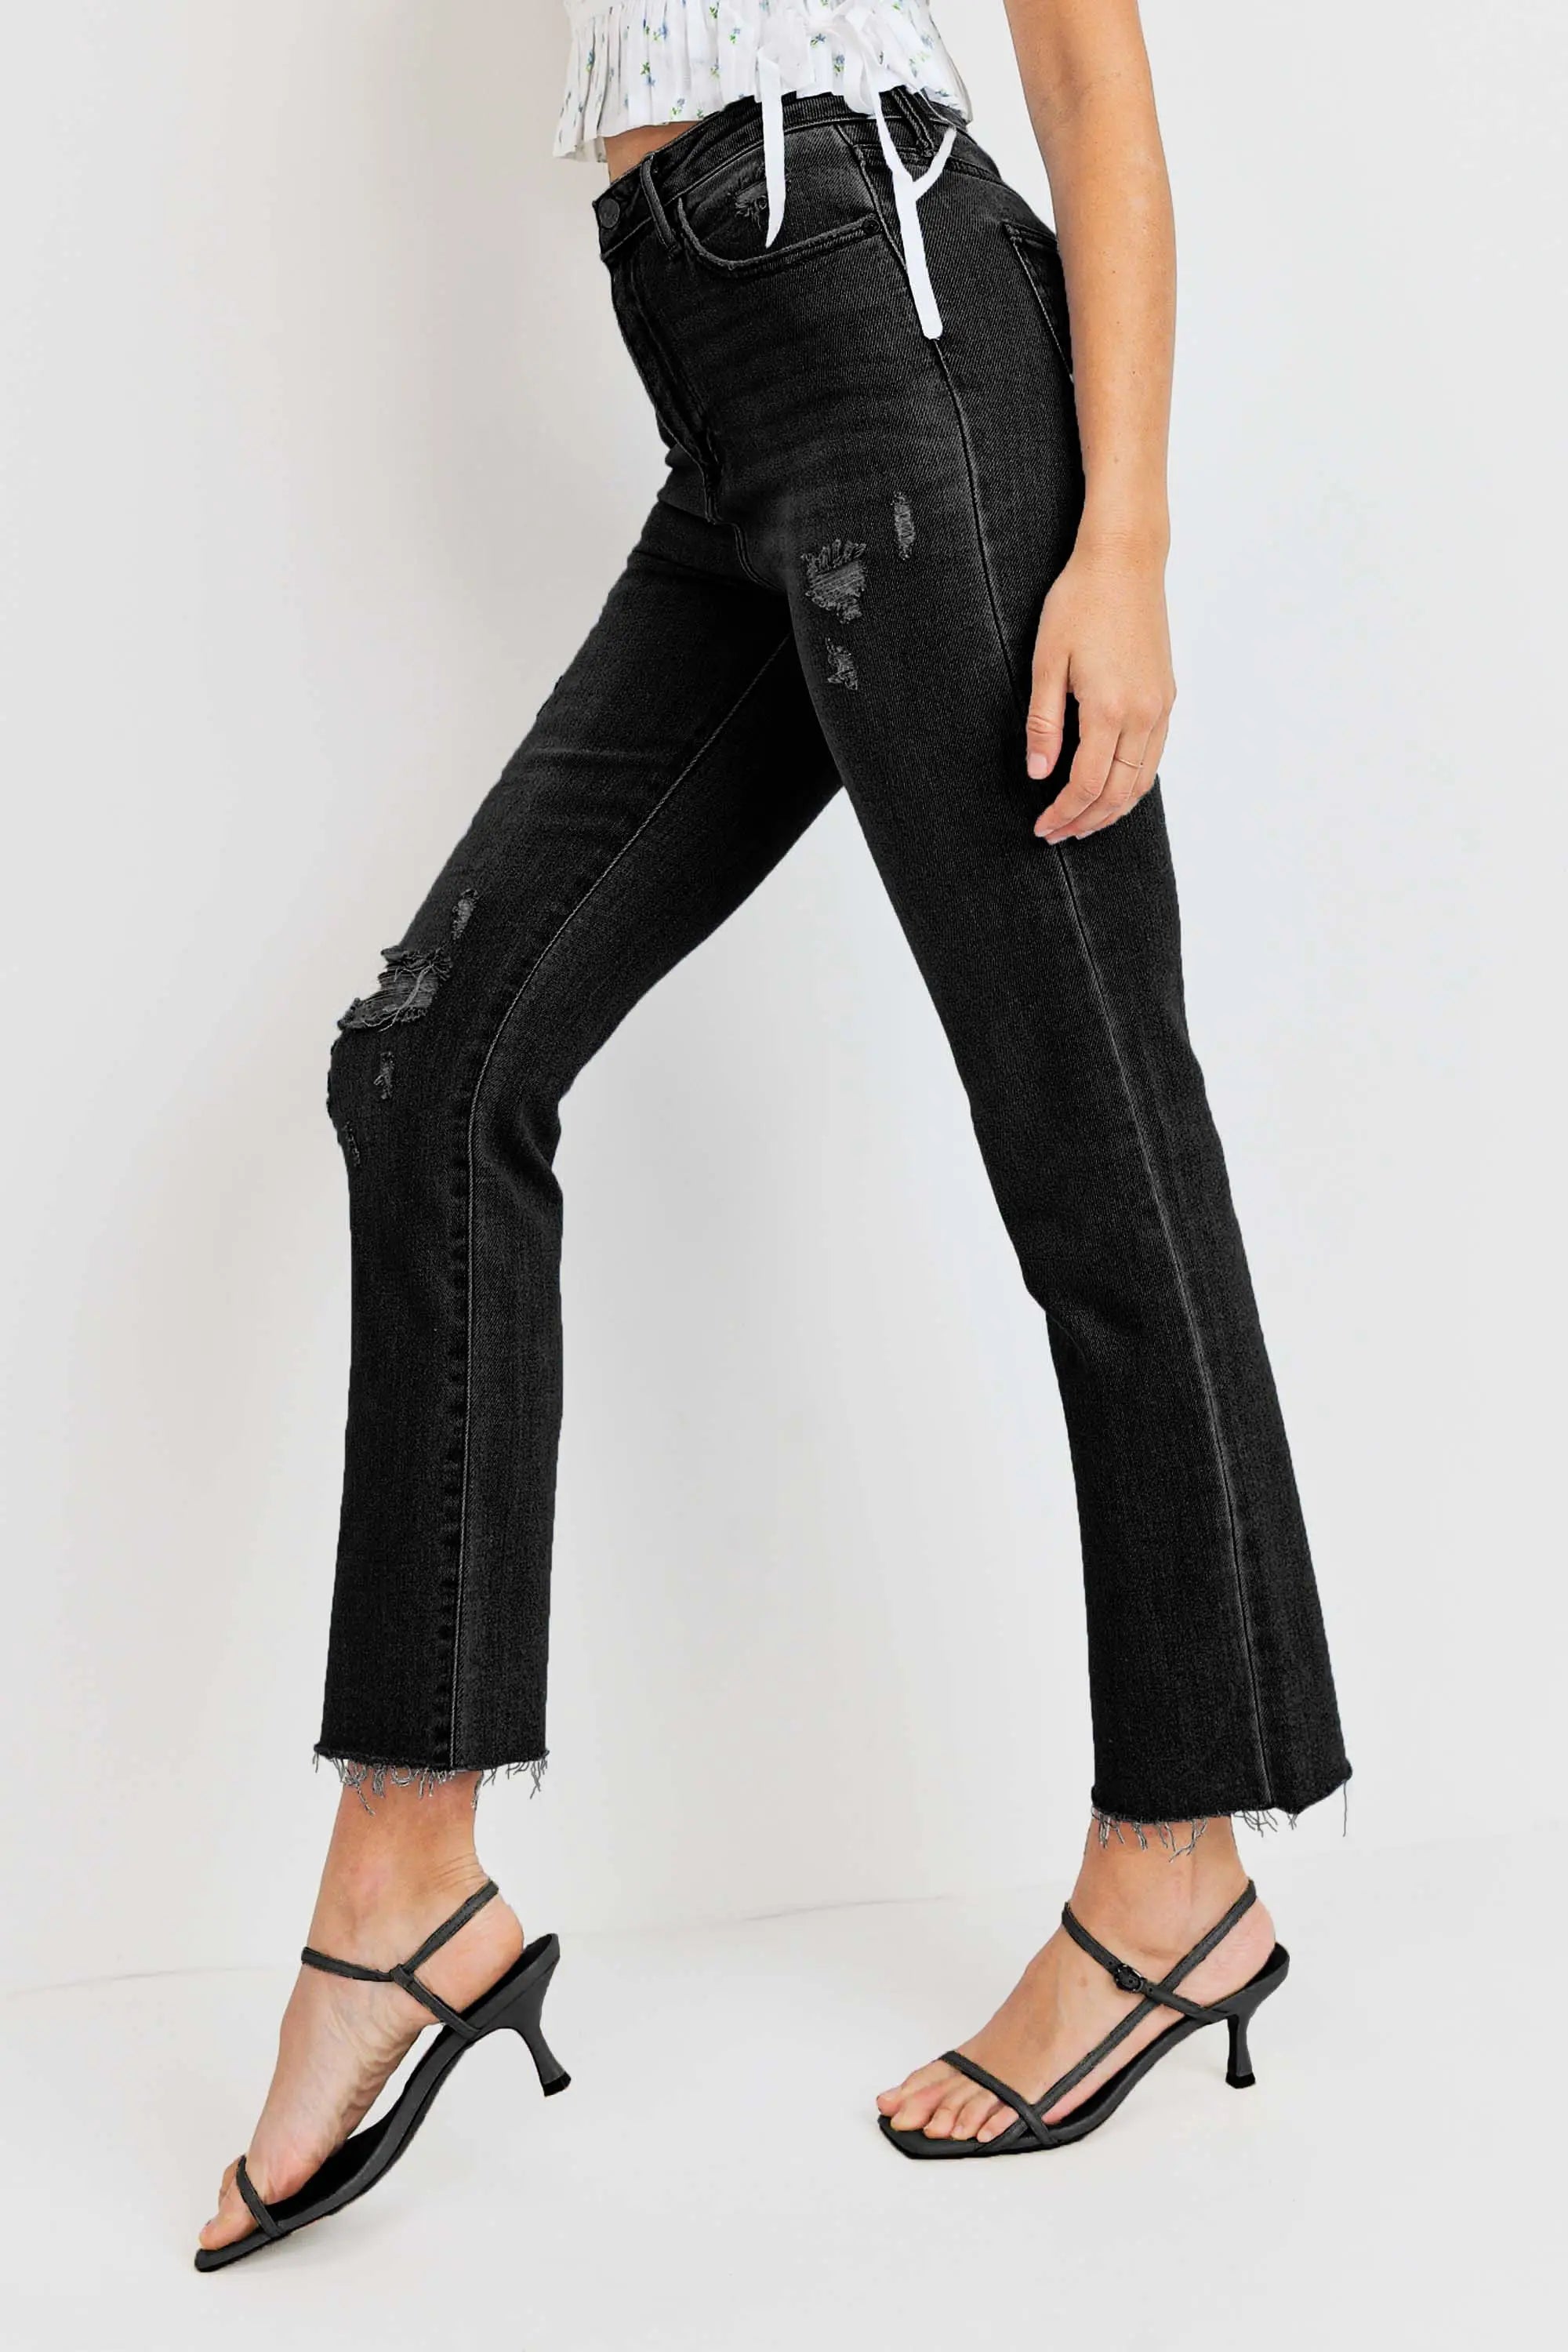 Black Vintage Distressed Straight Jeans